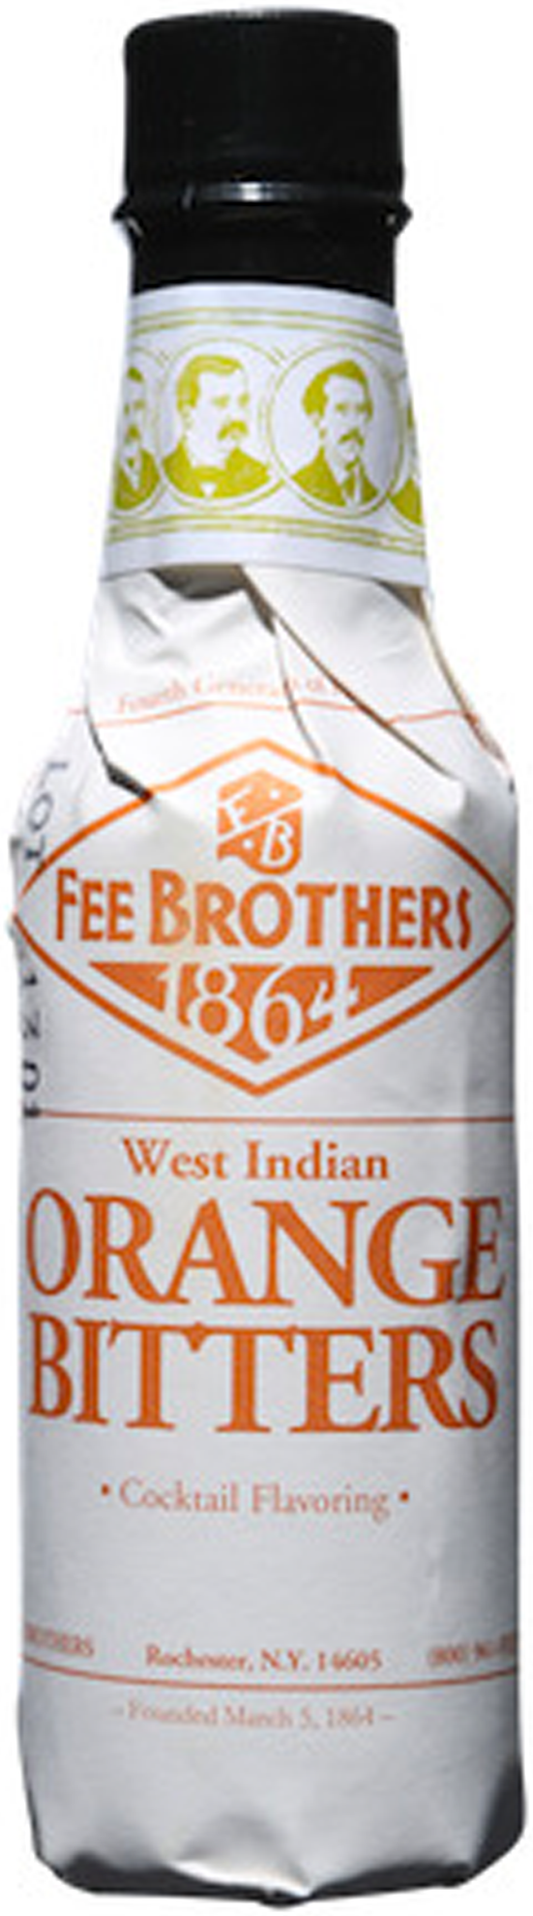 Fee Brothers Orange Bitters 150ml